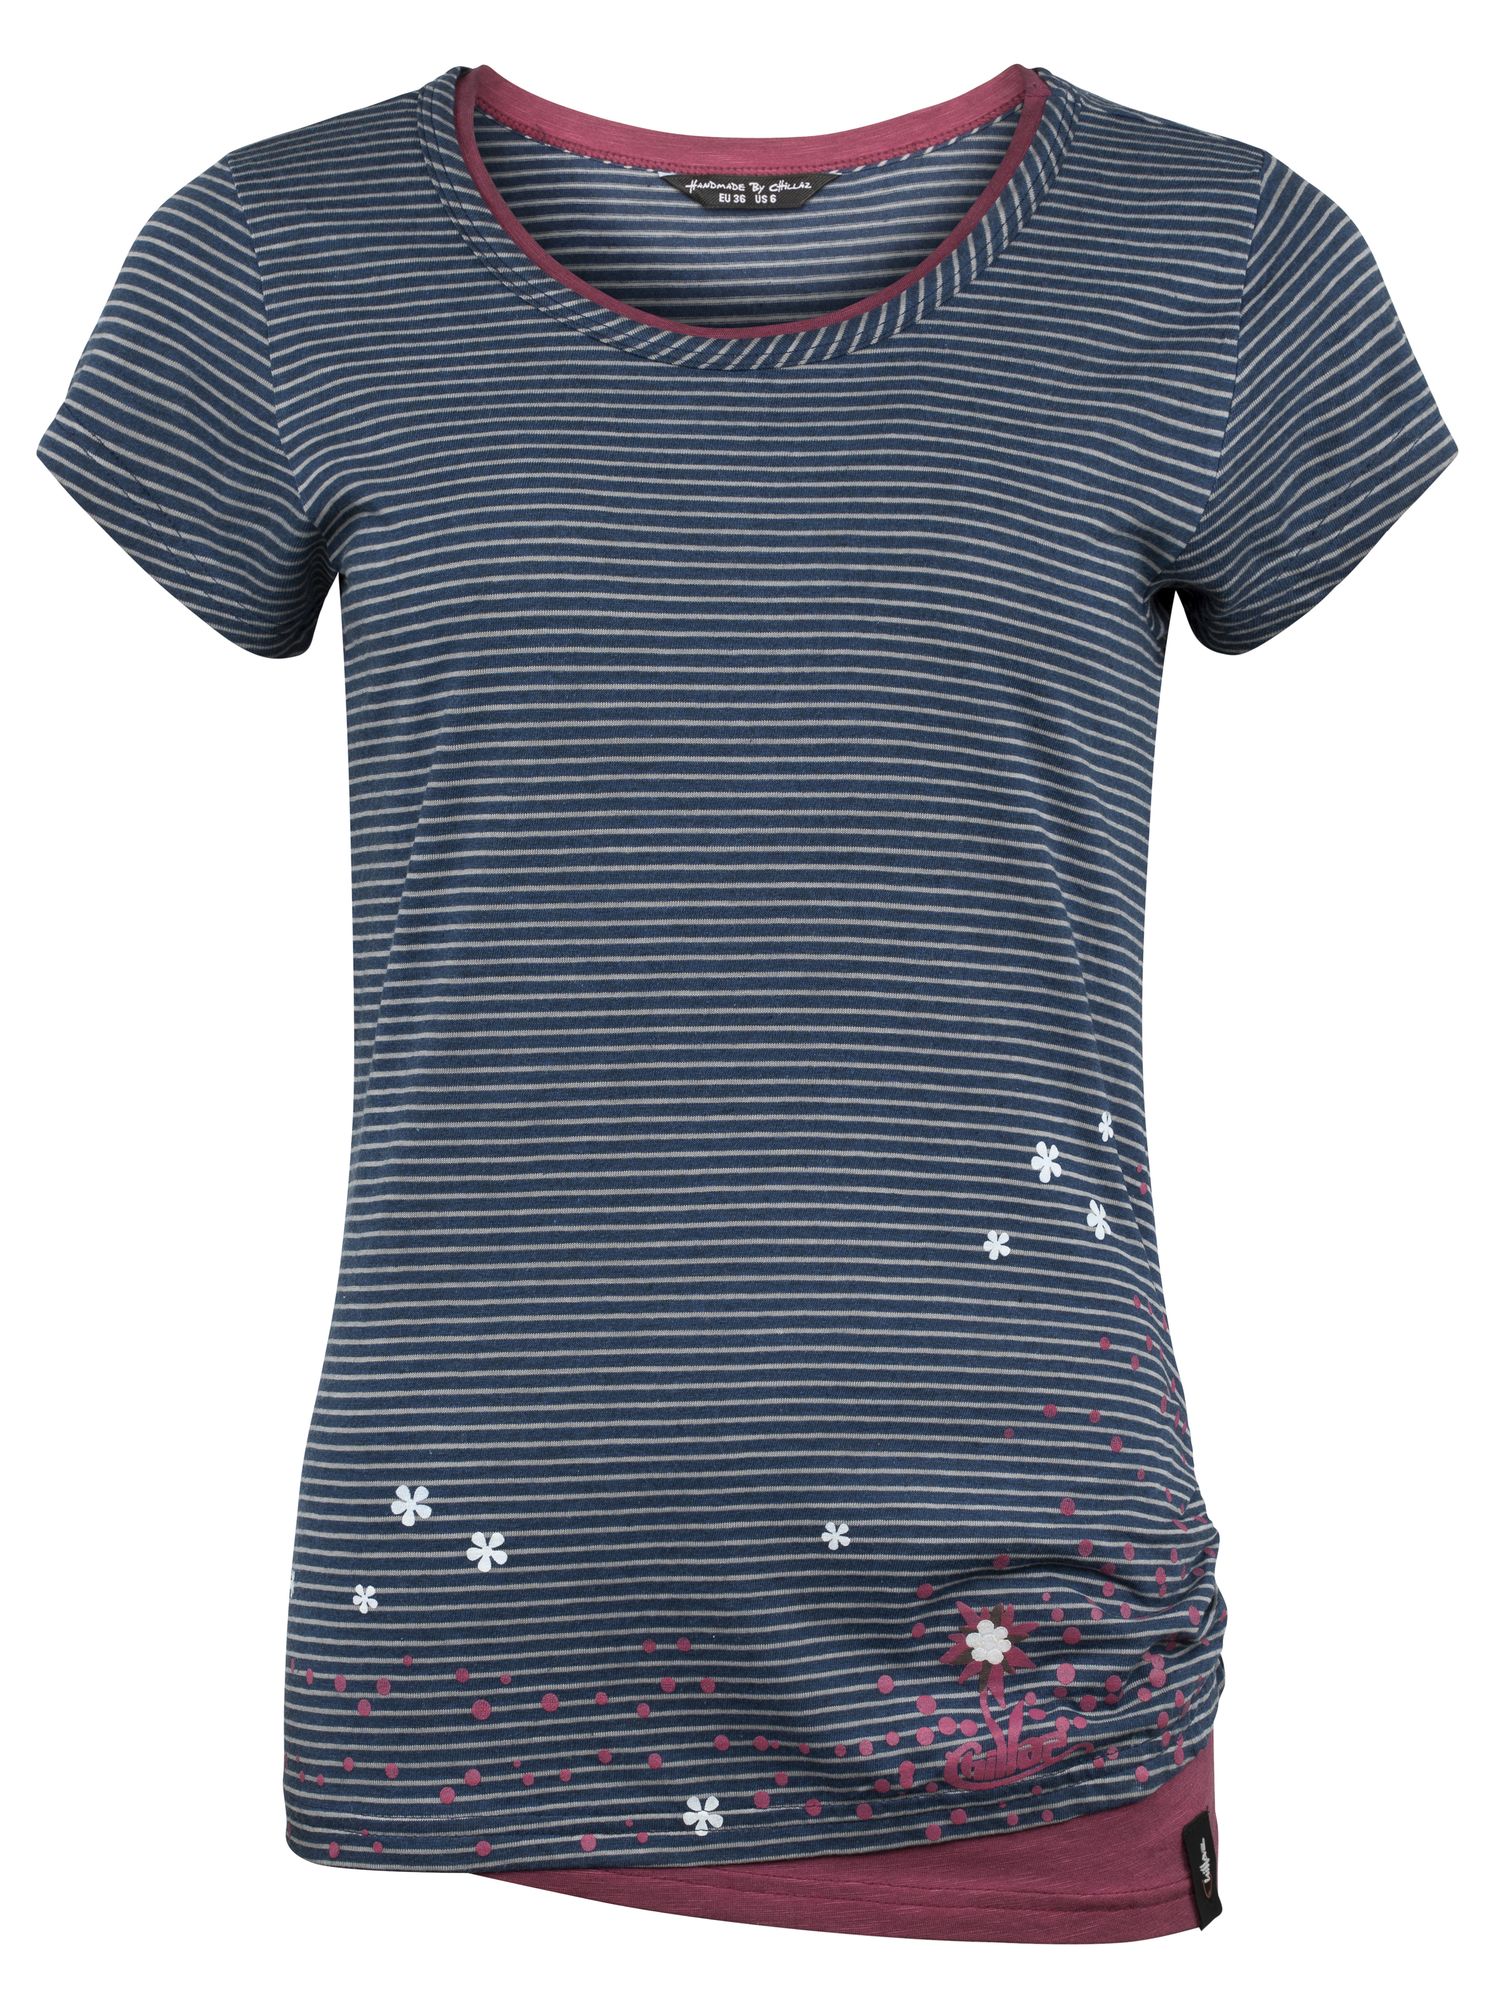 Chillaz dámské tričko Fancy Little Dot Barva: indigo blue stripes washed, Velikost: 40